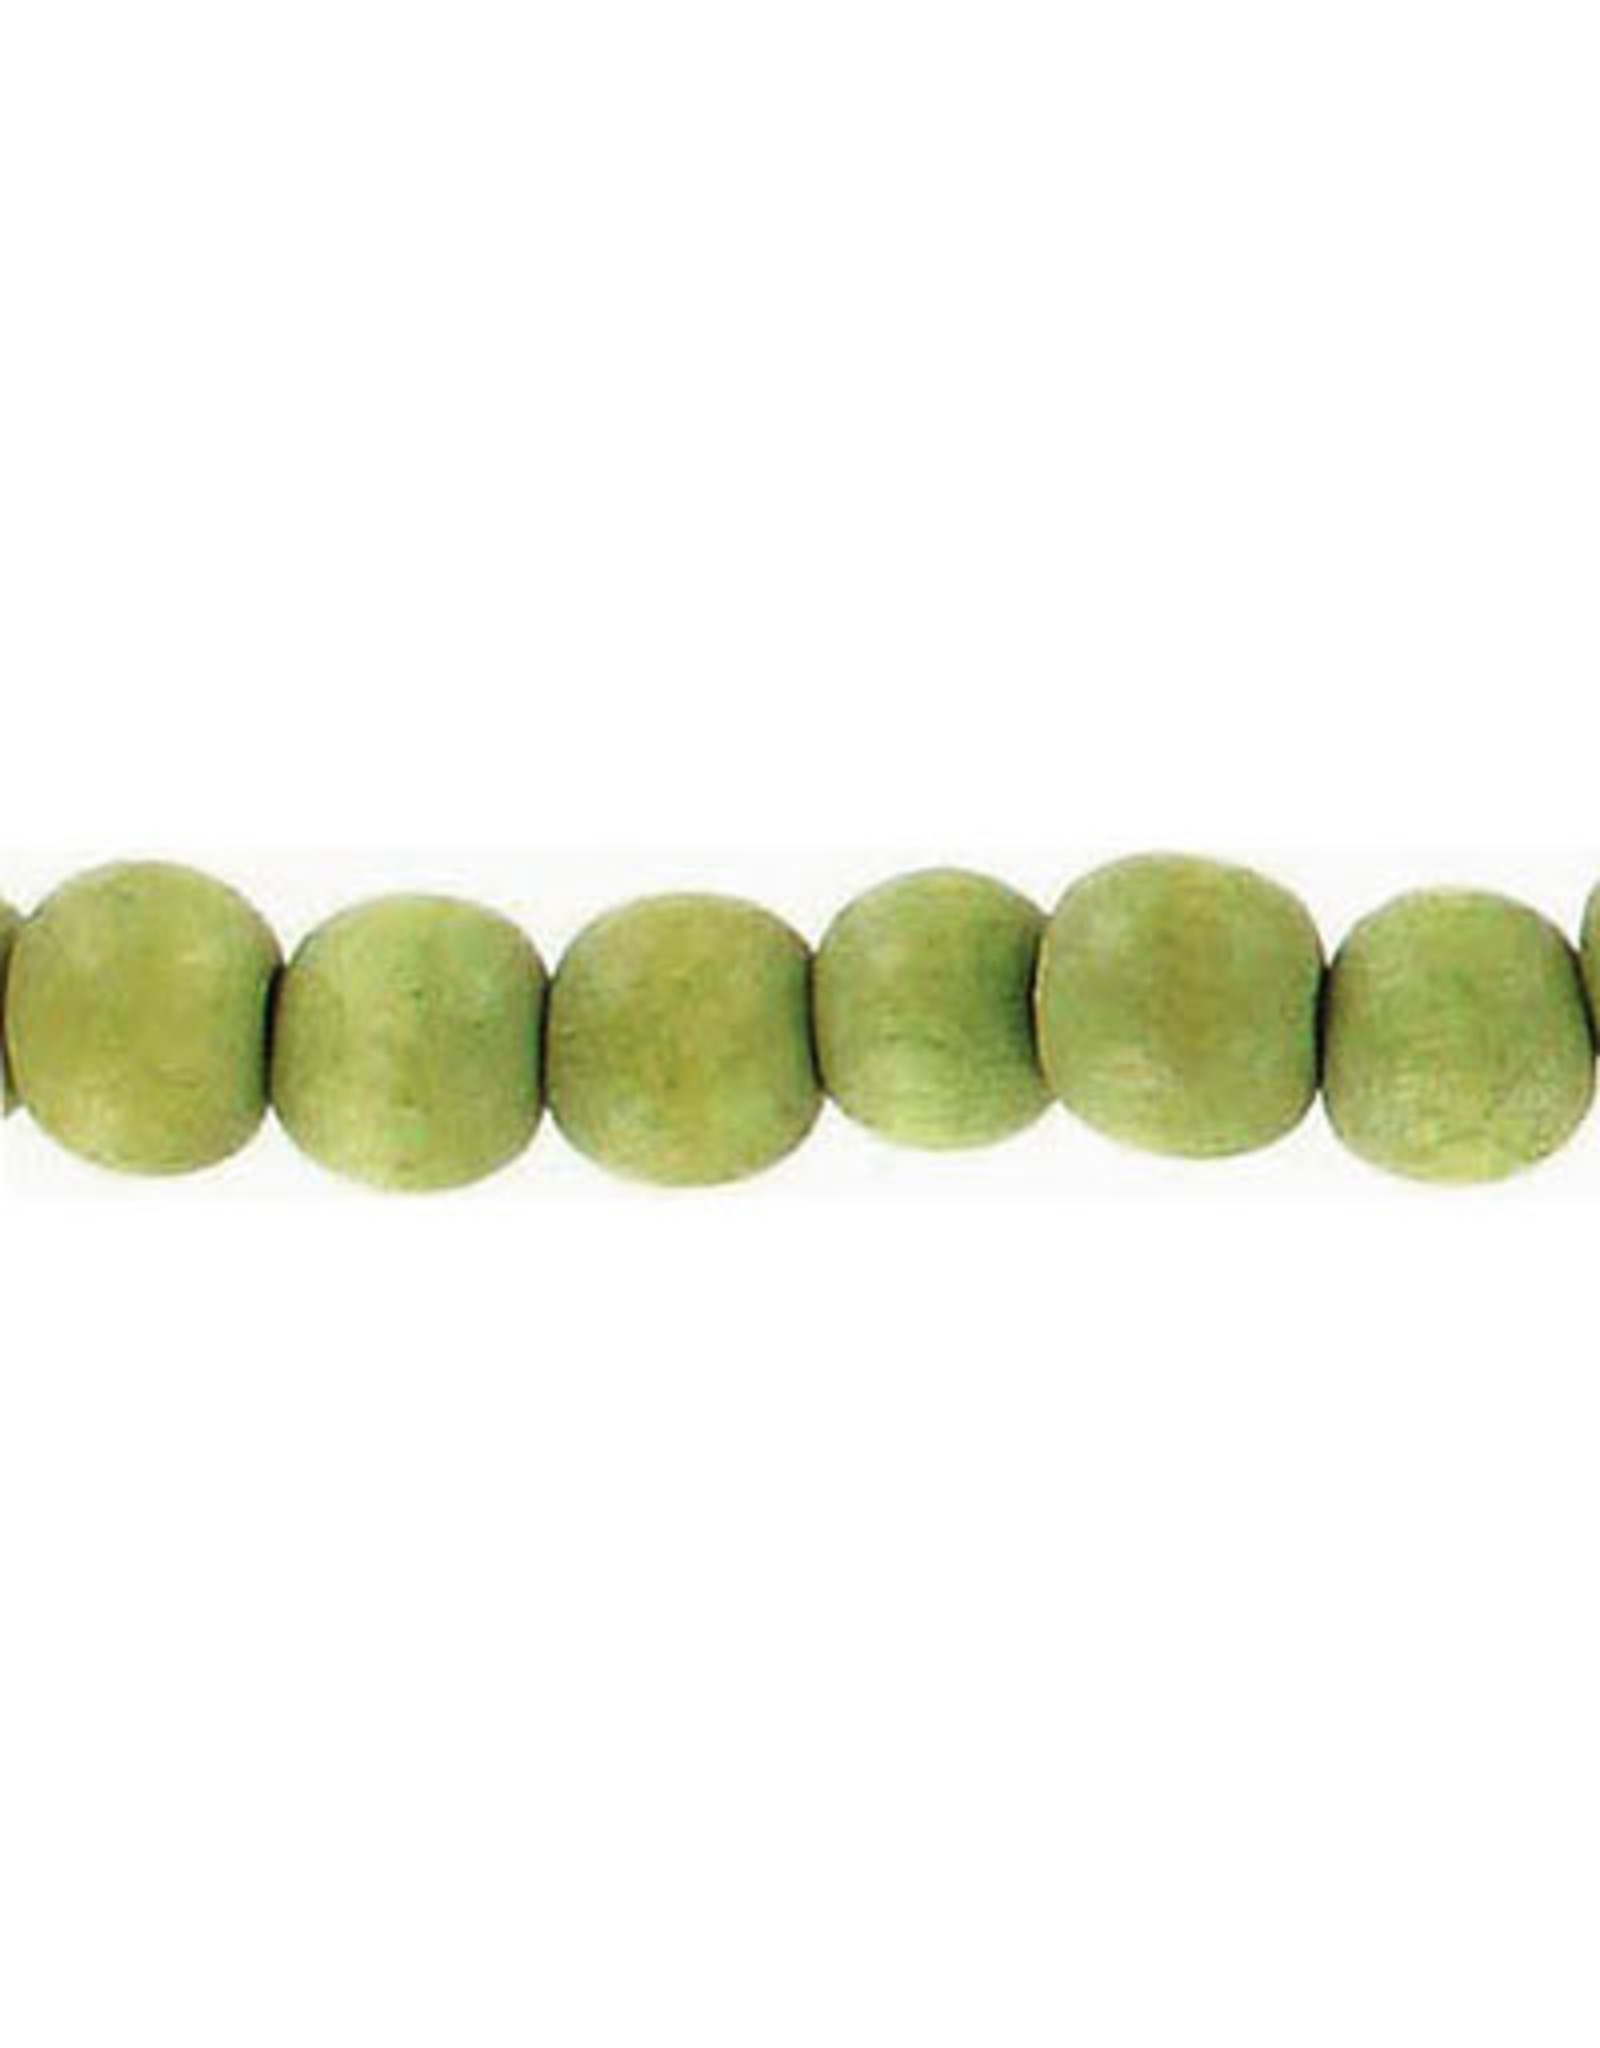 Wood 6mm Olive Green 15" Strand  approx  x65 Beads